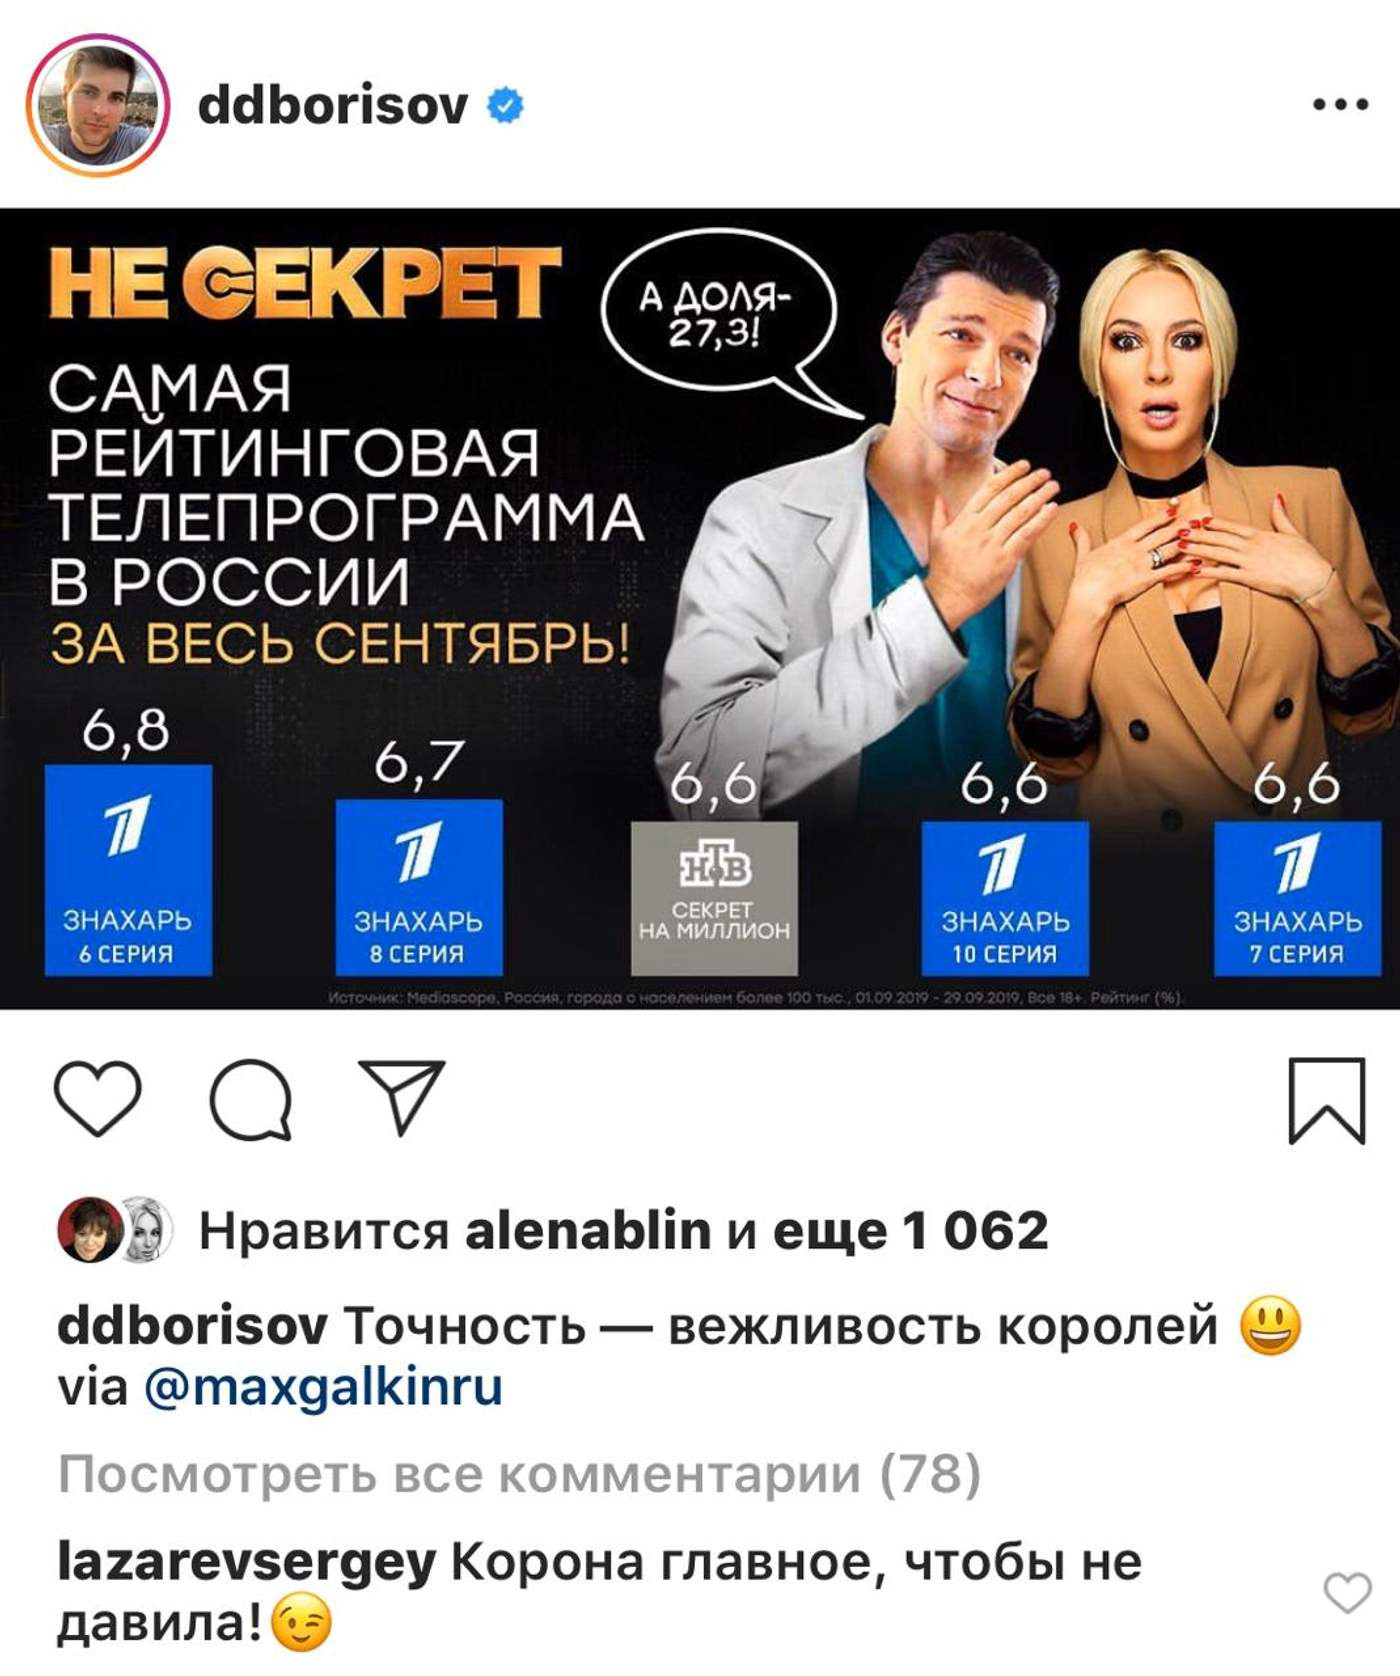 Фото: Instagram.com/ddborisov